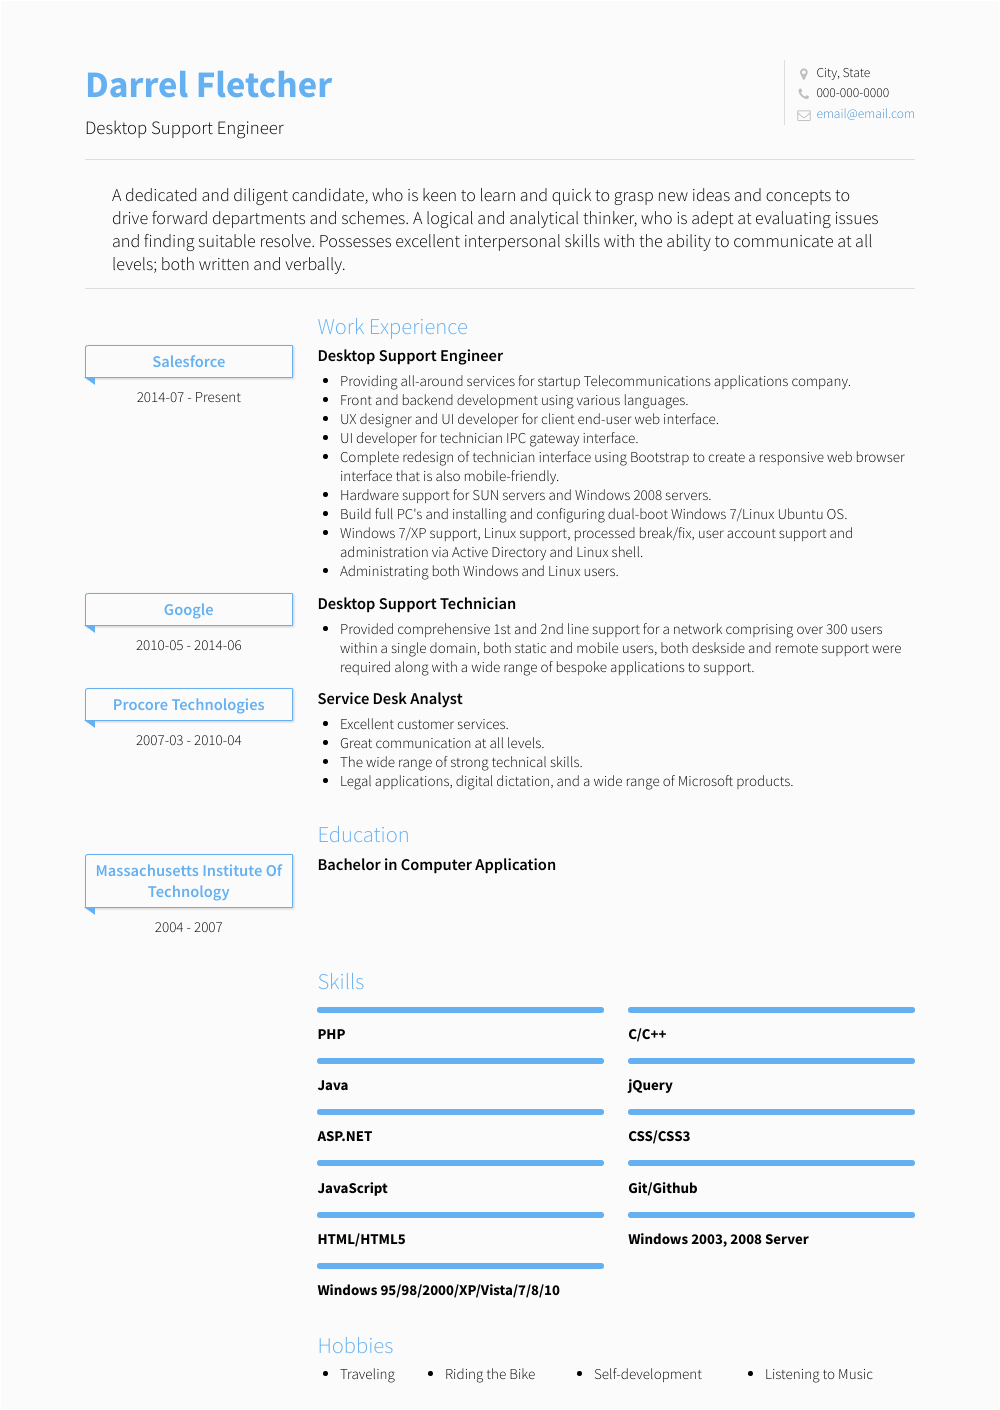 Sample Resume format for Desktop Support Engineer Desktop Support Engineer Resume Samples and Templates